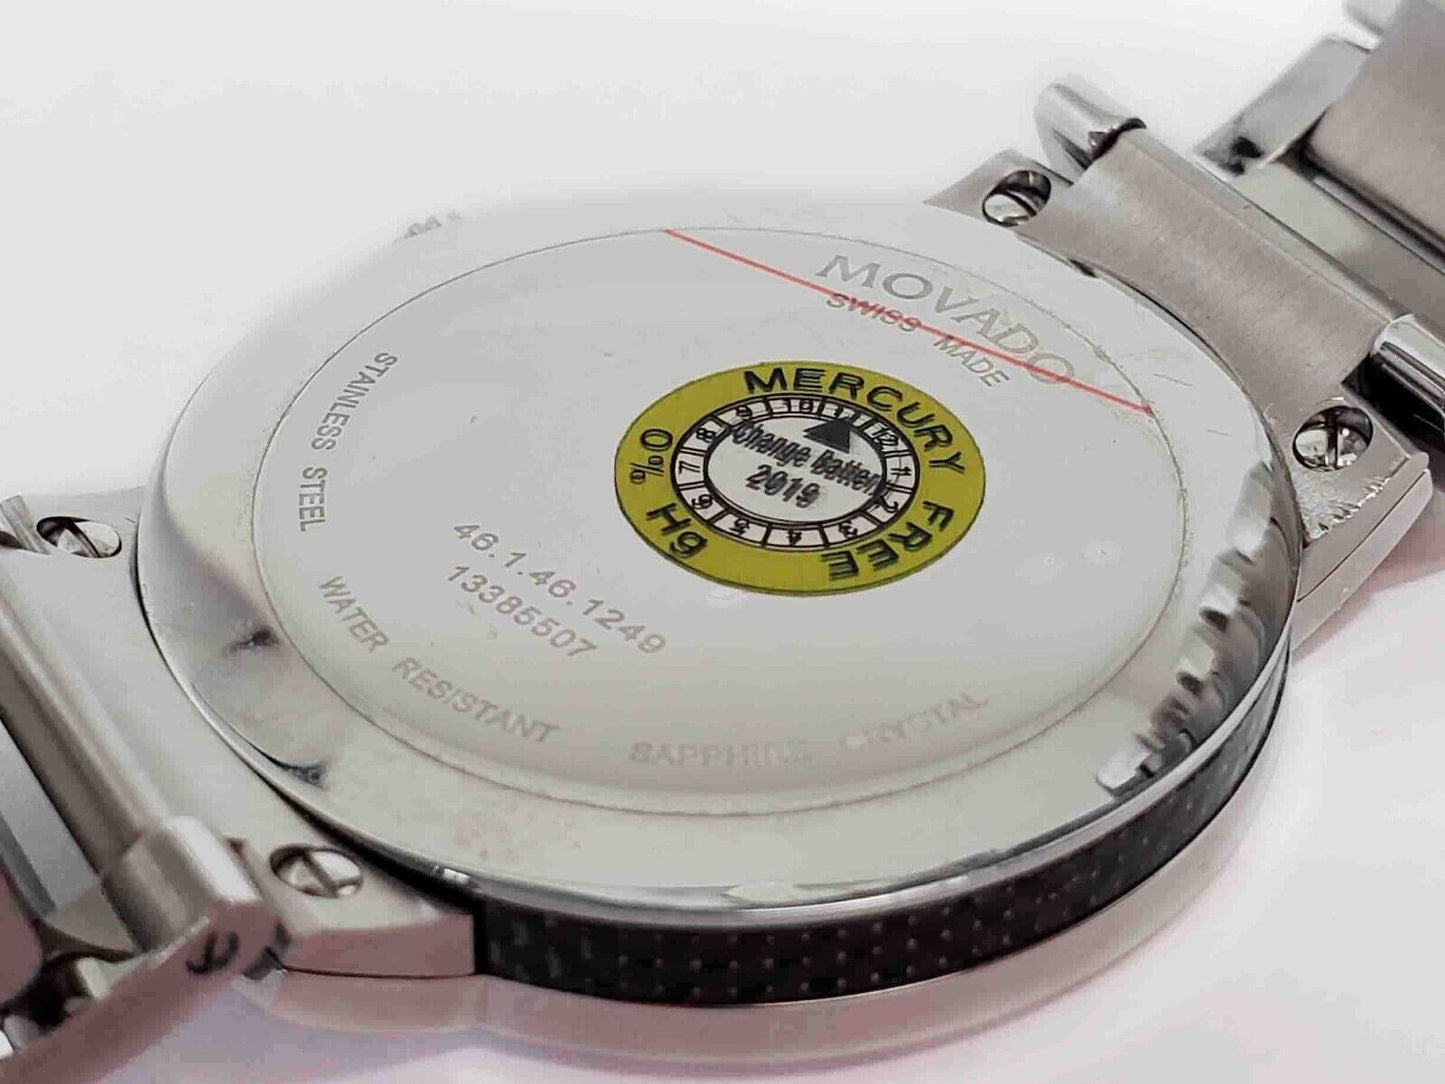 Movado Men's Silver 42mm Gravity Carbon Fiber Wristwatch